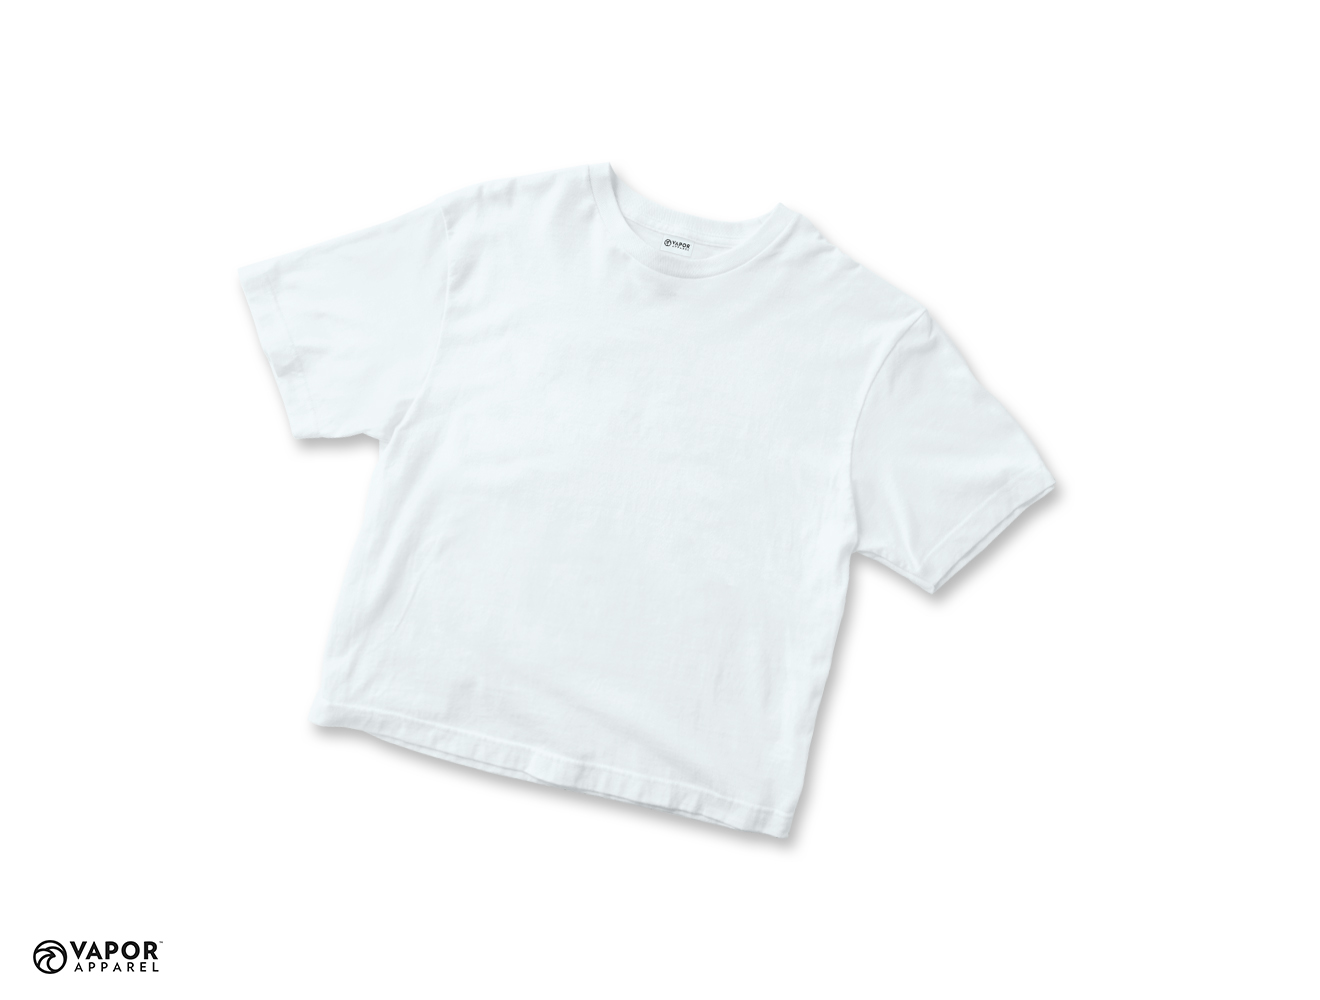 Vapor Sublimation T-Shirt for Junior size 116 - White